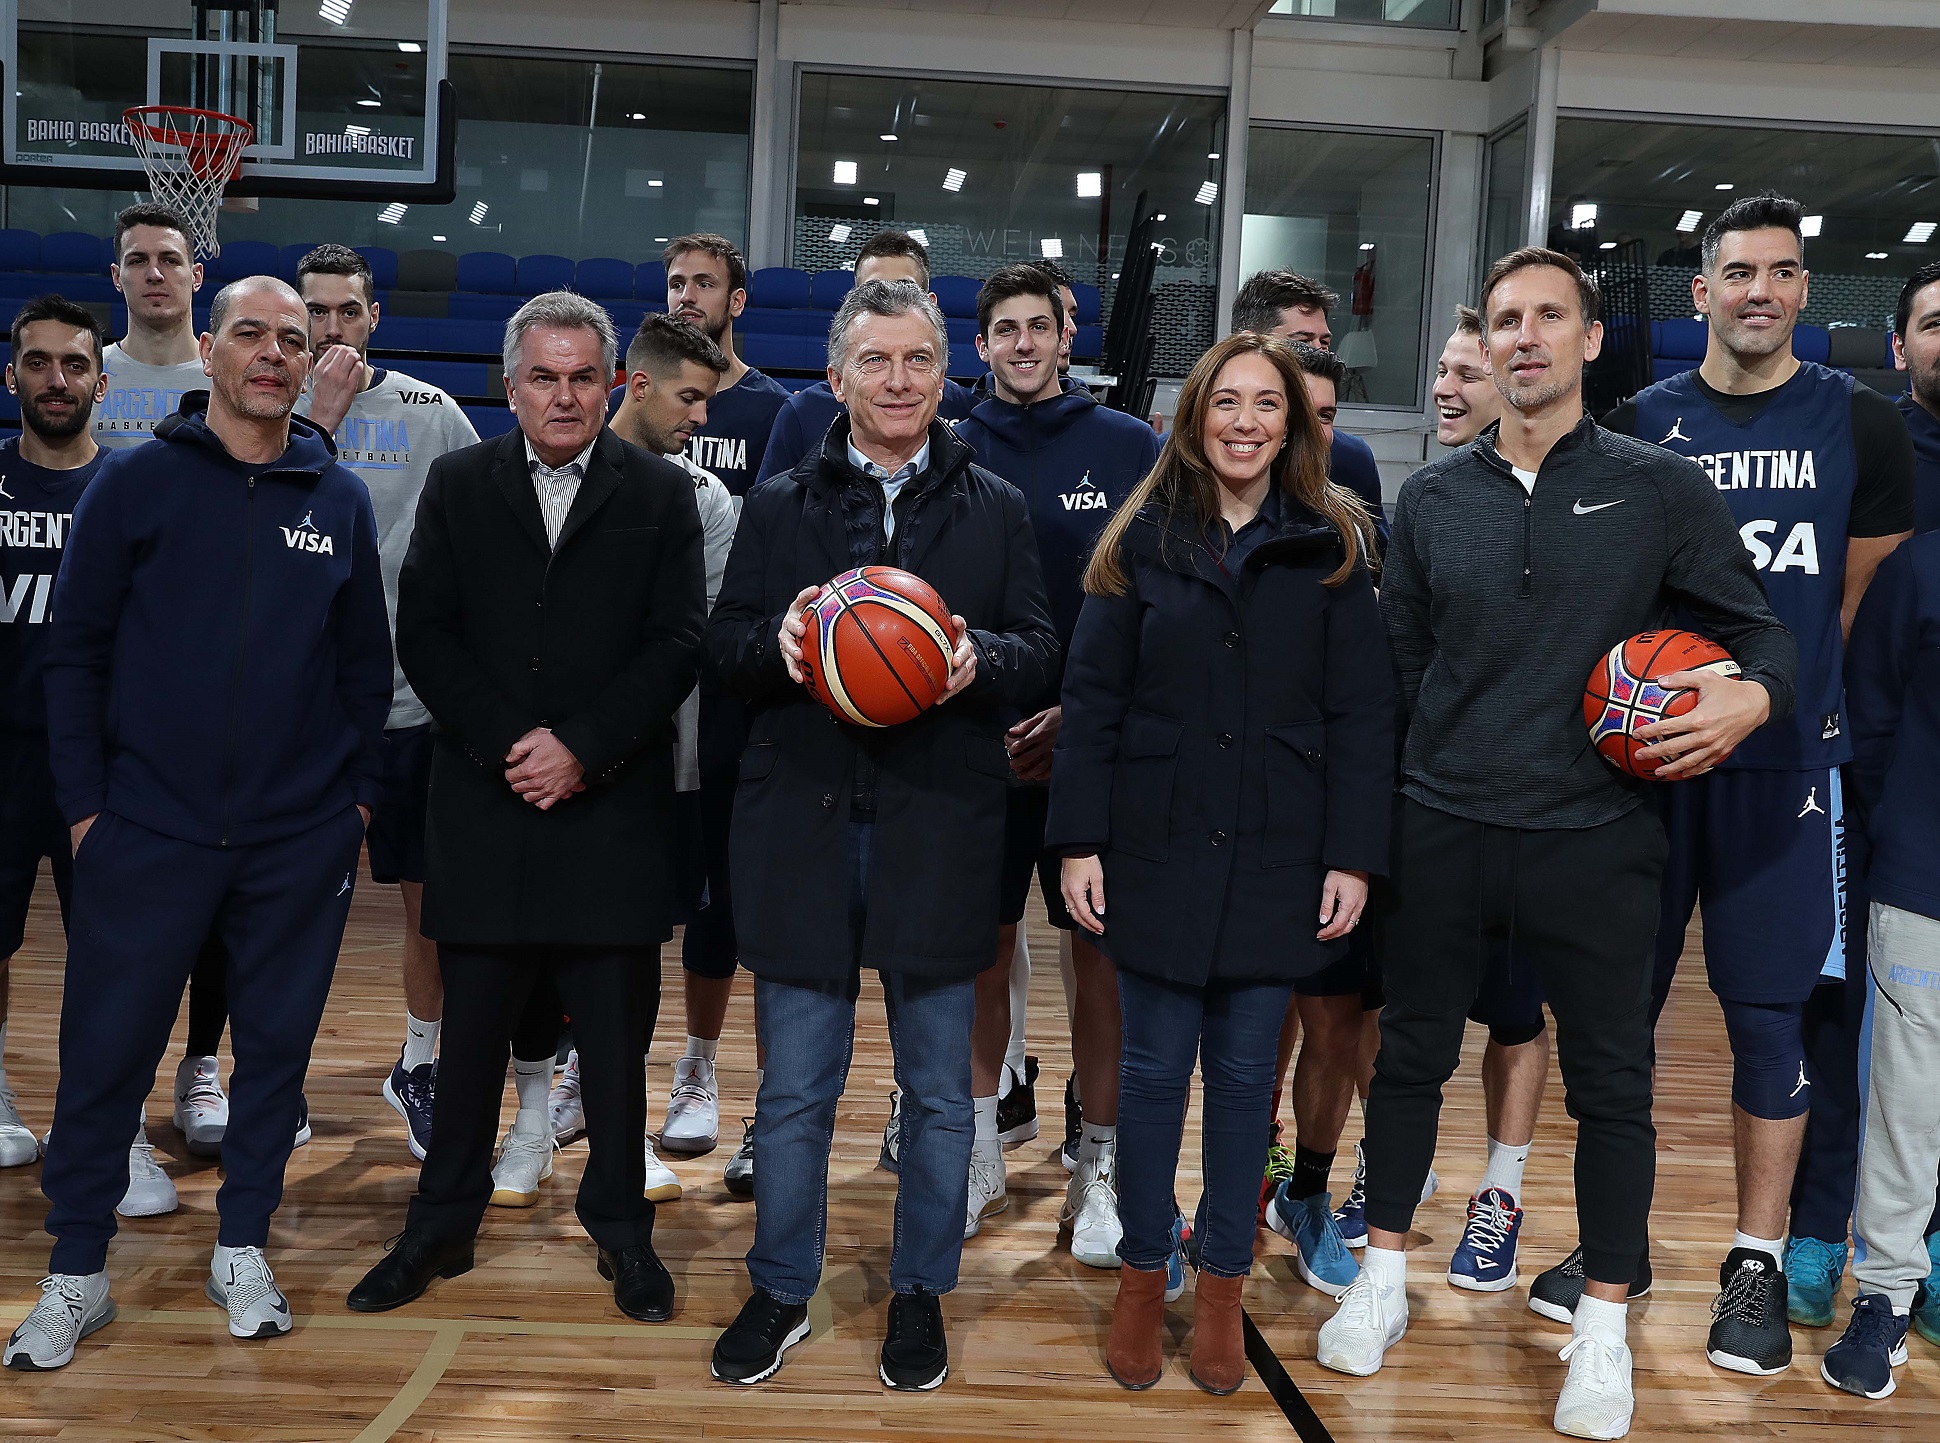 El presidente Macri visitó un centro de entrenamiento de alto rendimiento deportivo en Bahía Blanca